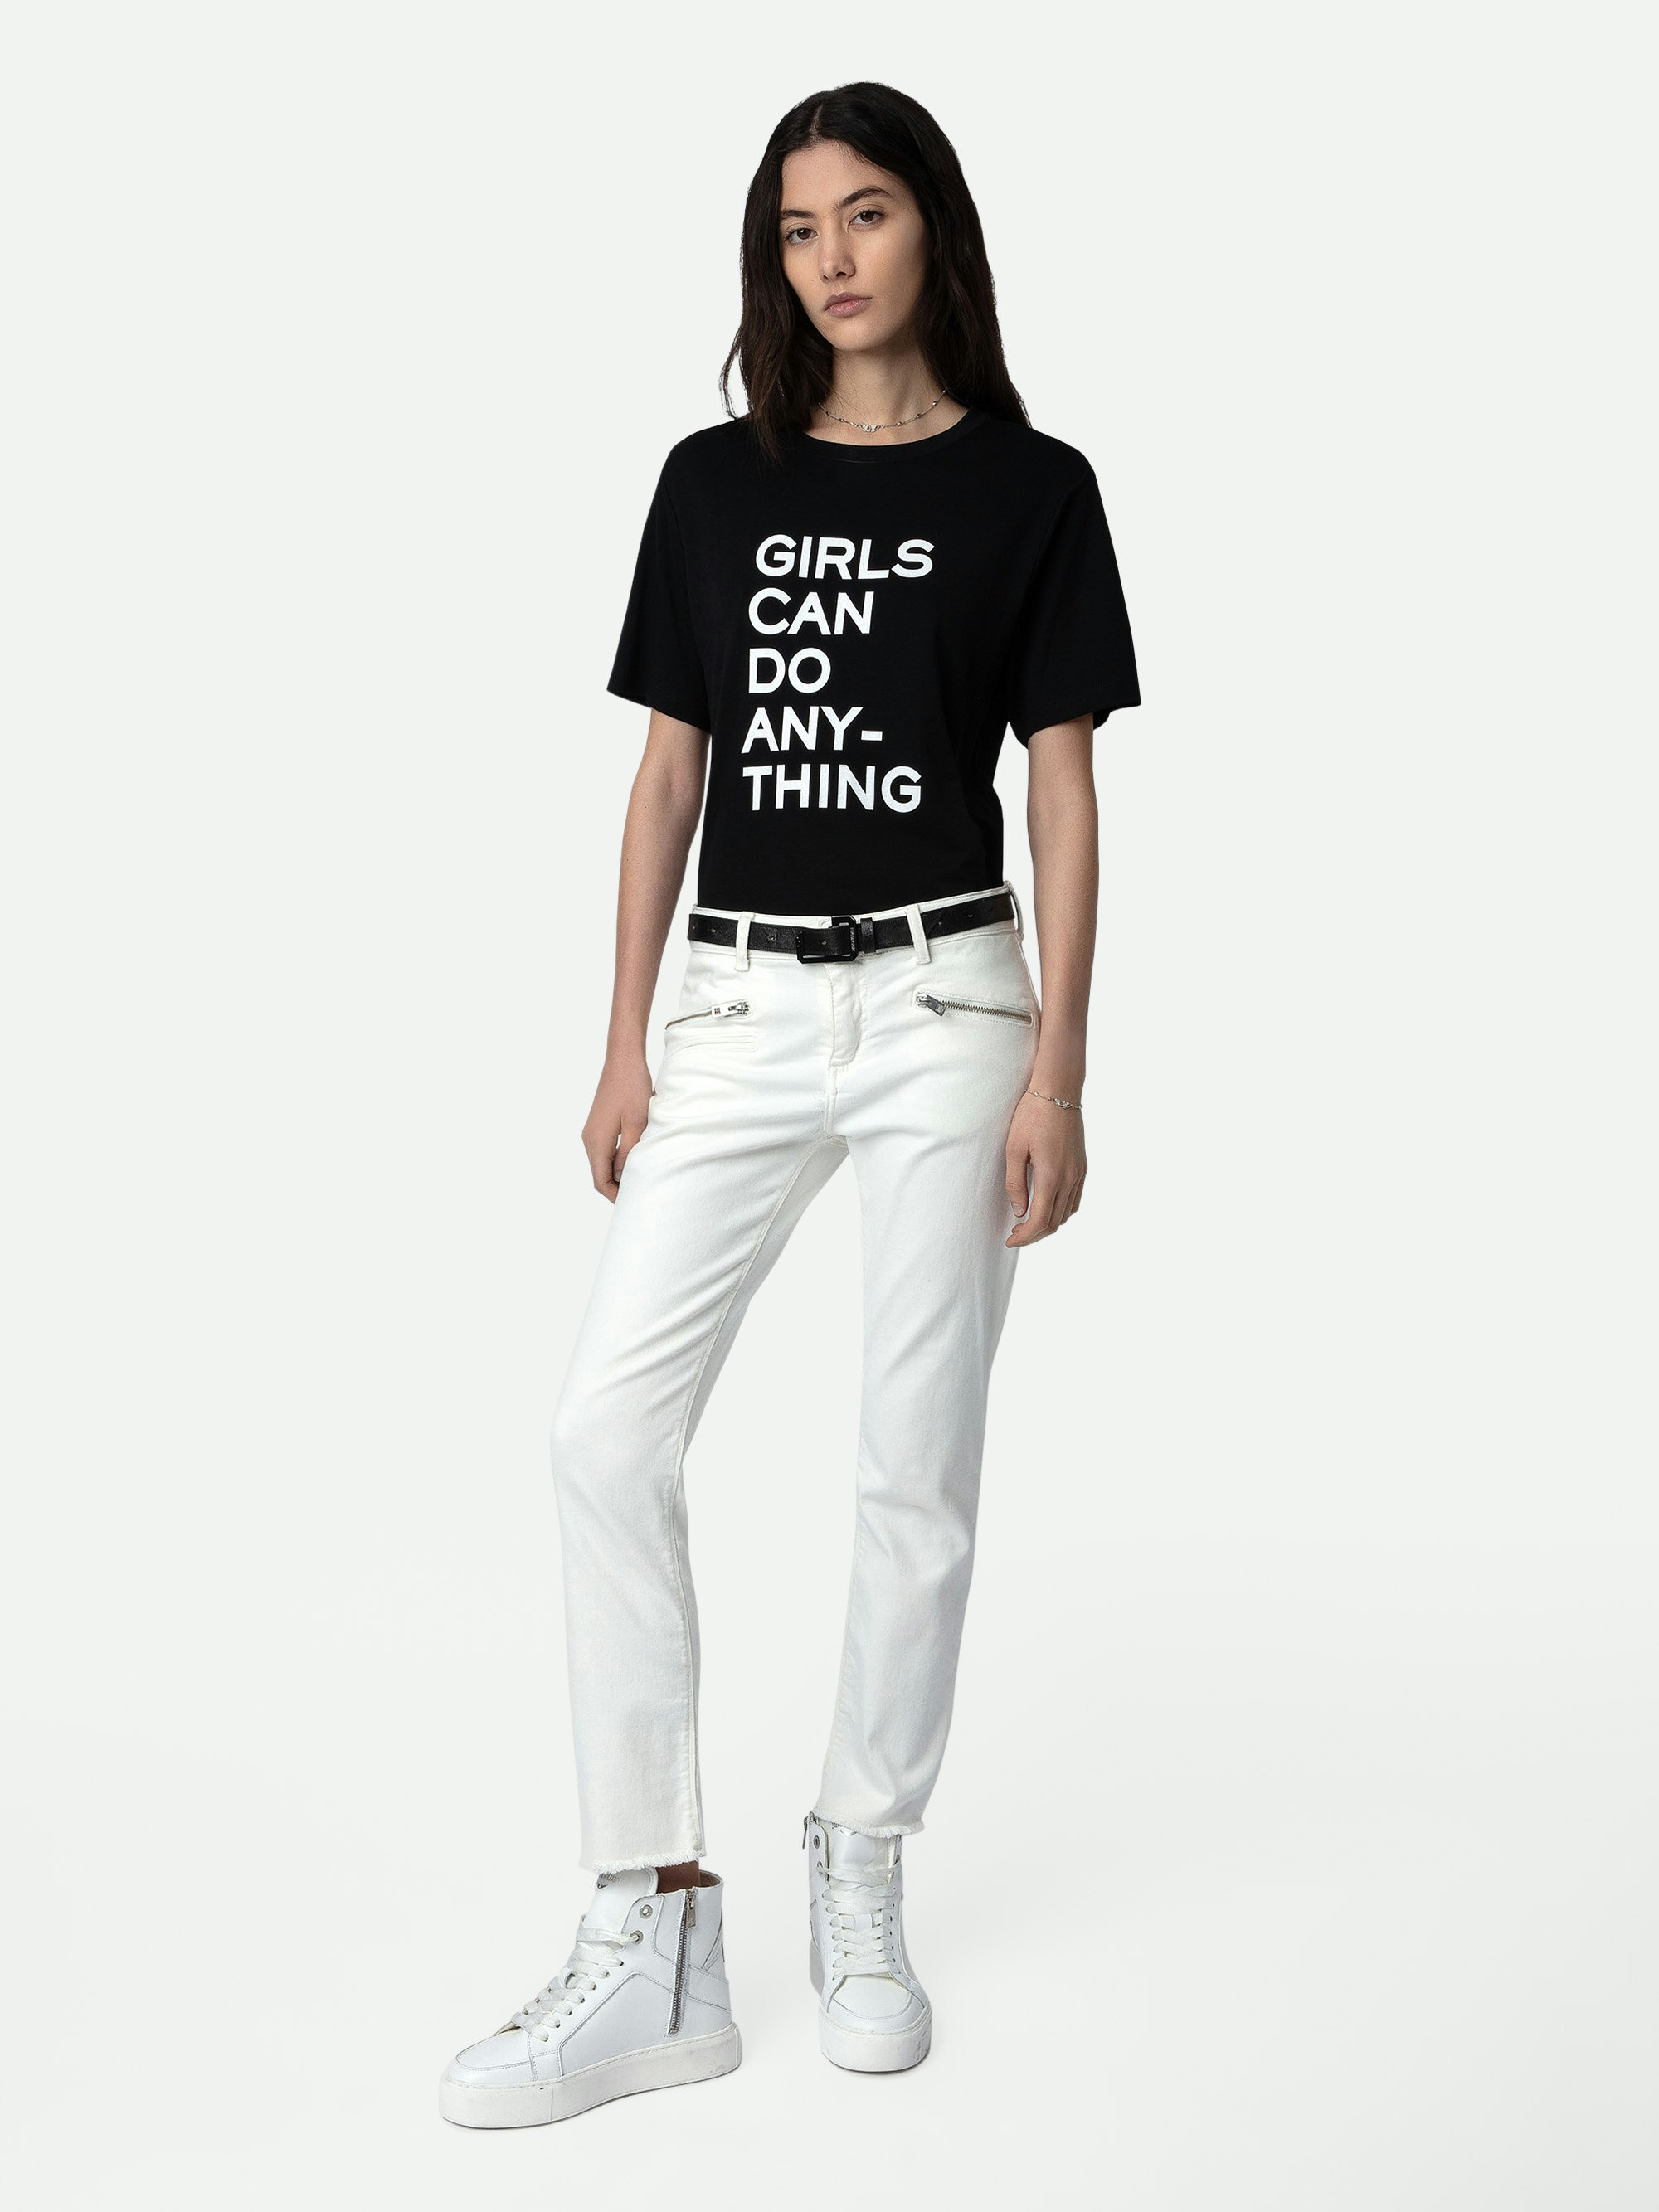 Camiseta Bella - Camiseta de algodón con mensaje